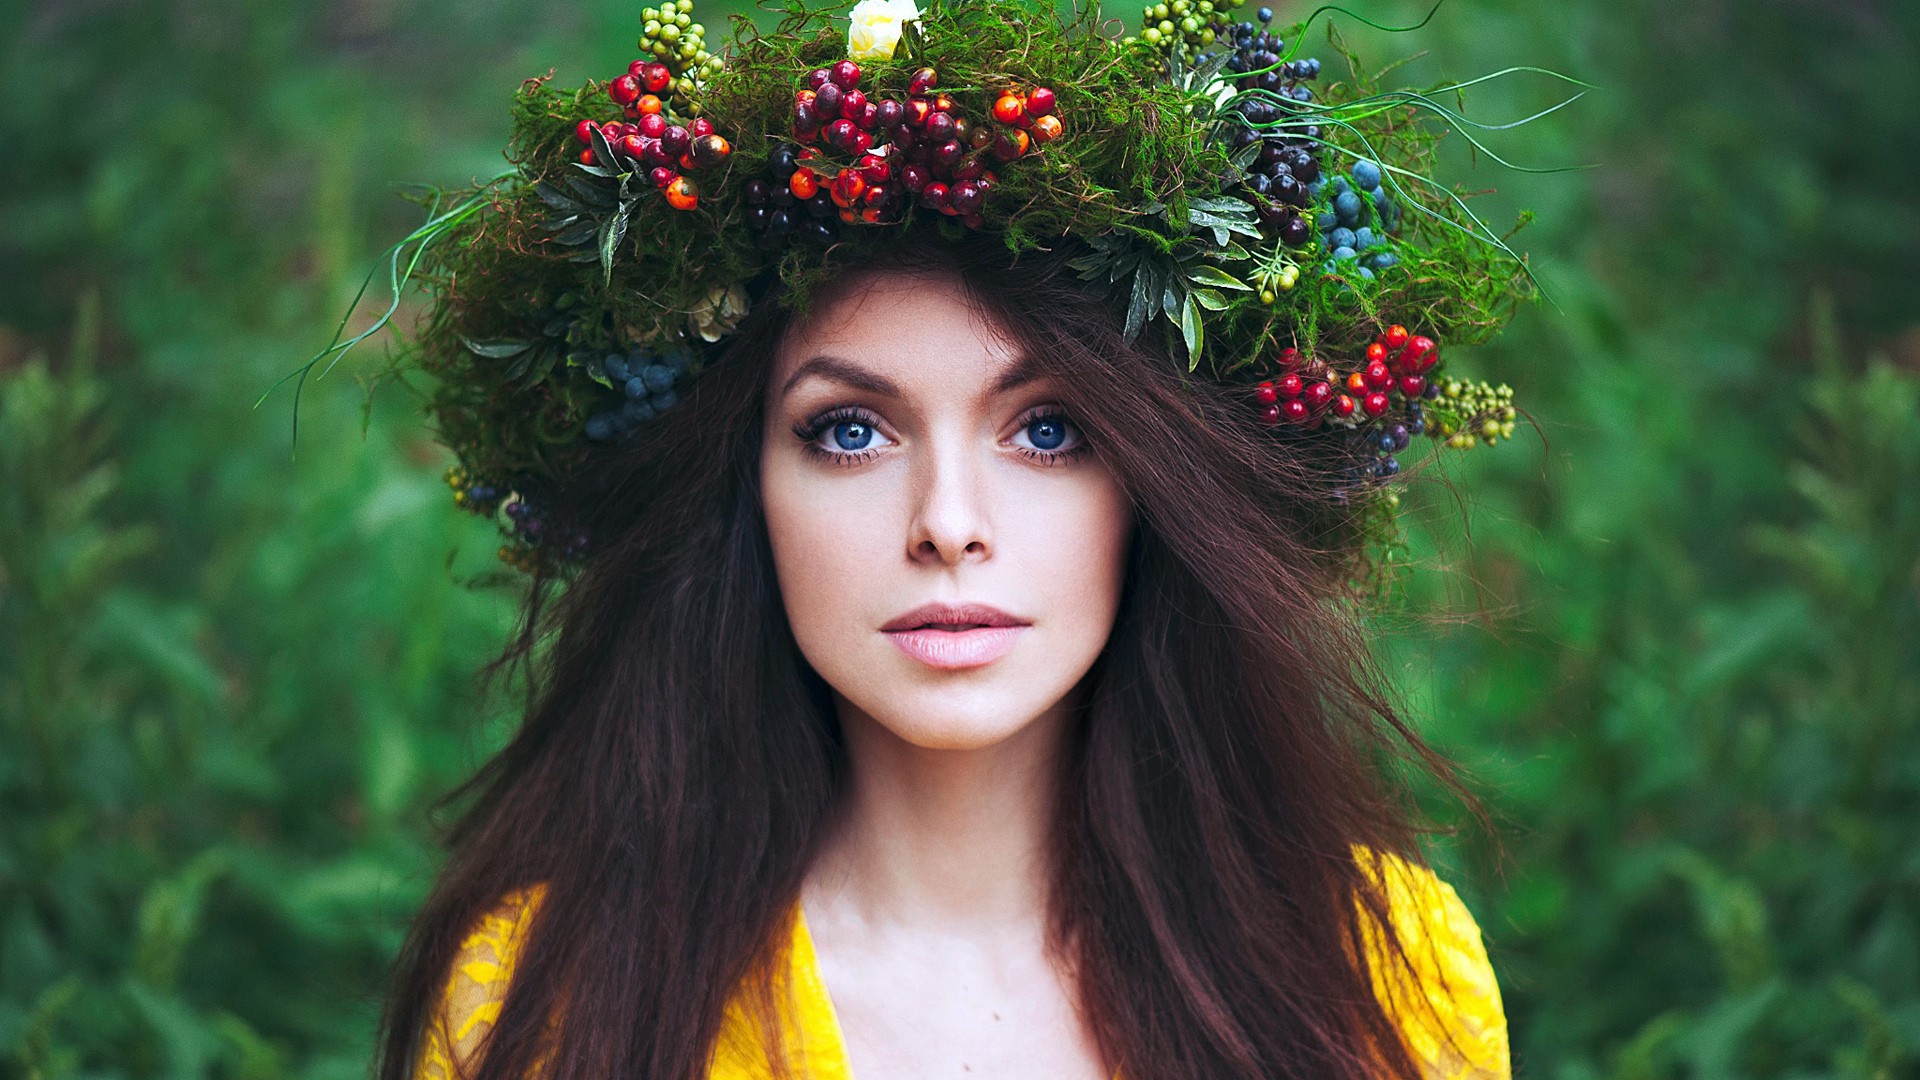 Лесные красавицы фото. Девушка в венке. Женщина с венком на голове. Девушка в венке из цветов.